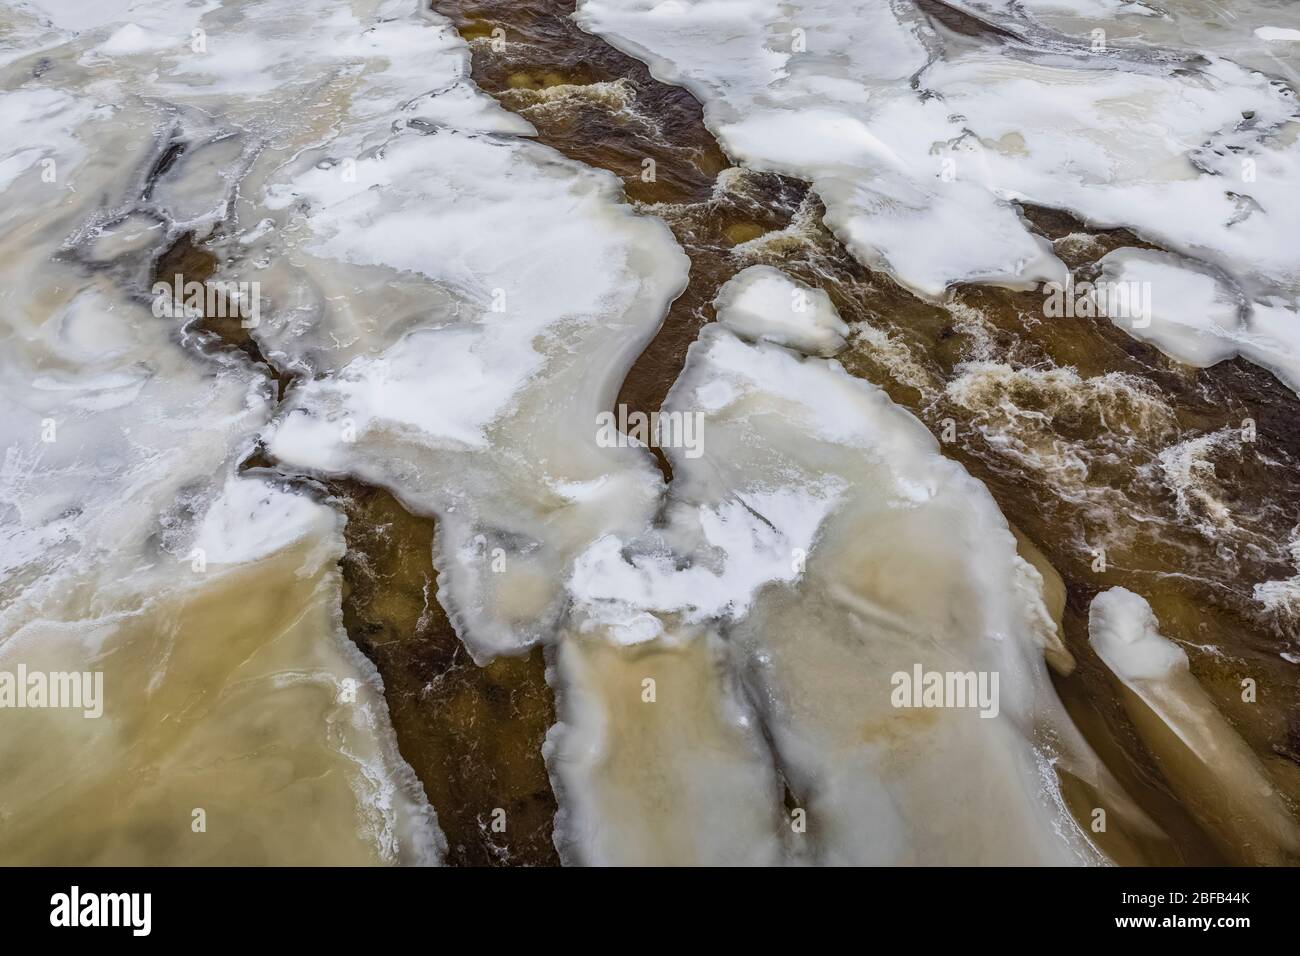 Buchans River tallado a través de nieve y hielo en Buchans, Terranova, Canadá Foto de stock